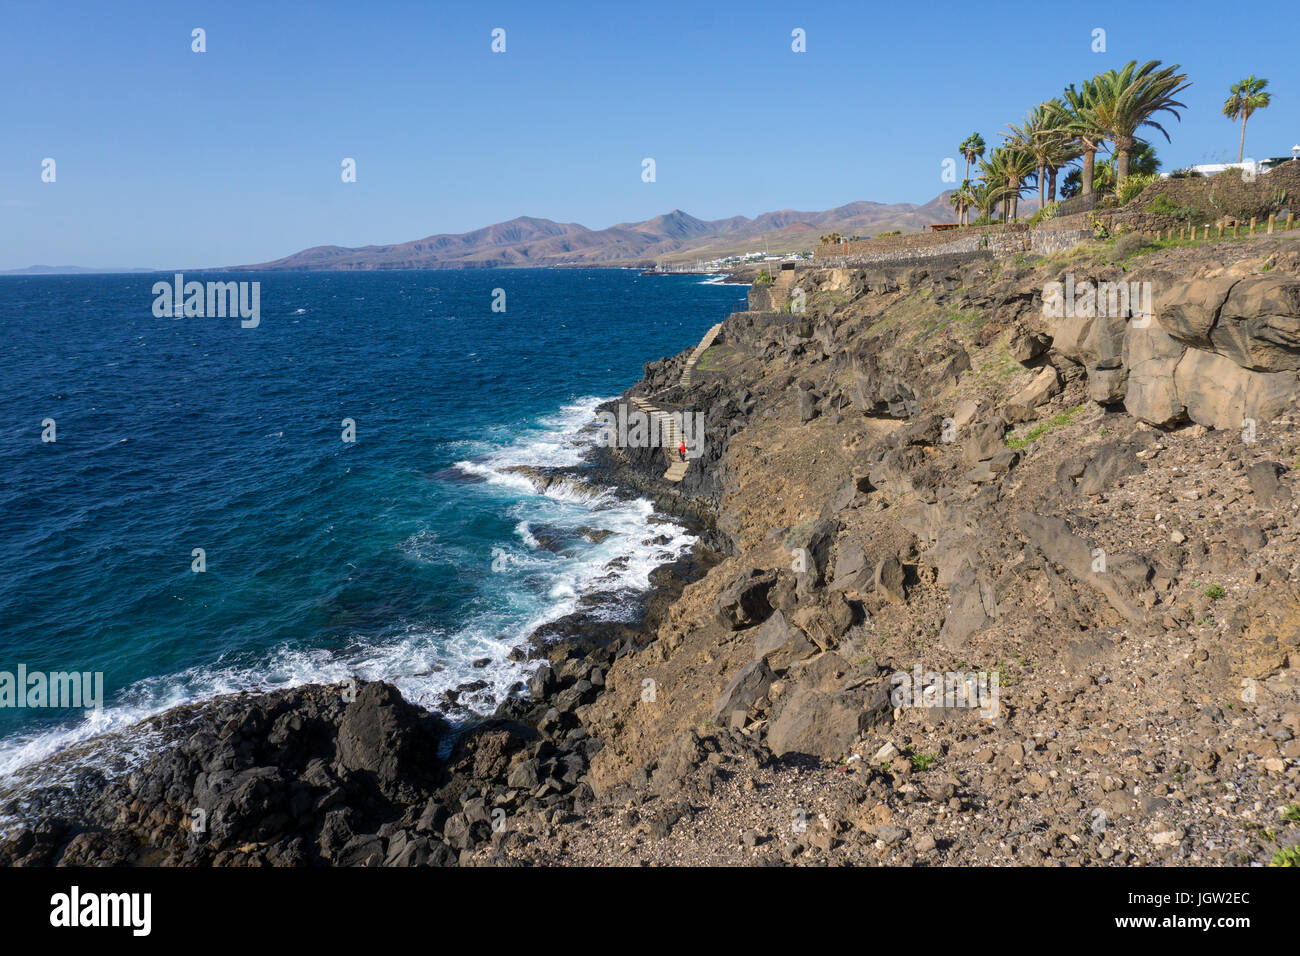 Rocky coast landscape between Puerto del Carmen and Puerto Calero, Lanzarote island, Canary islands, Spain, Europe Stock Photo